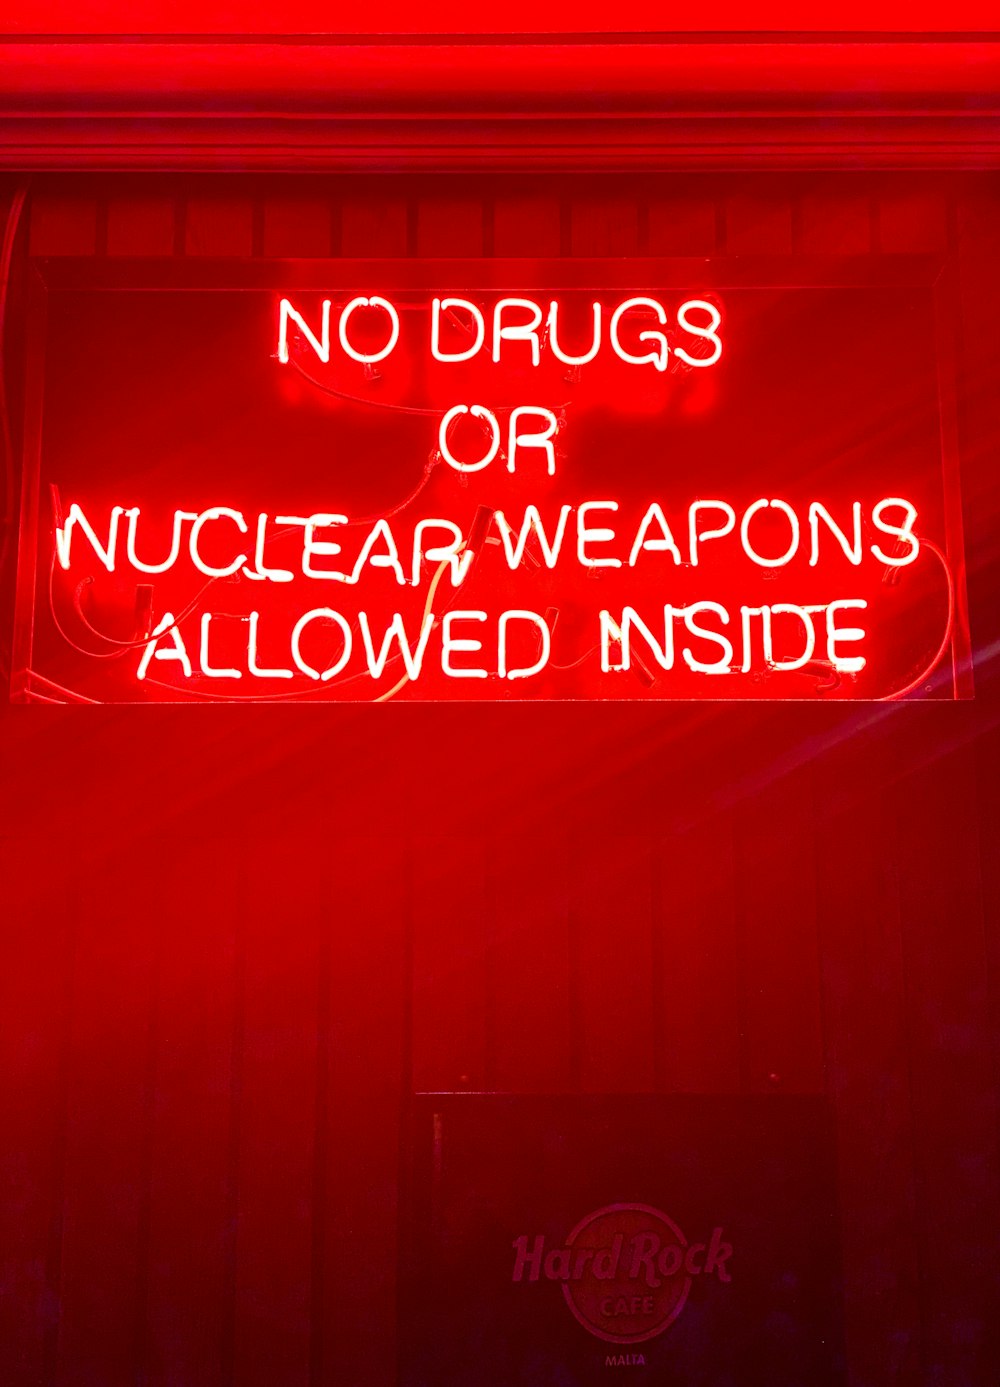 Non sono ammesse droghe o armi nucleari all'interno della luce al neon